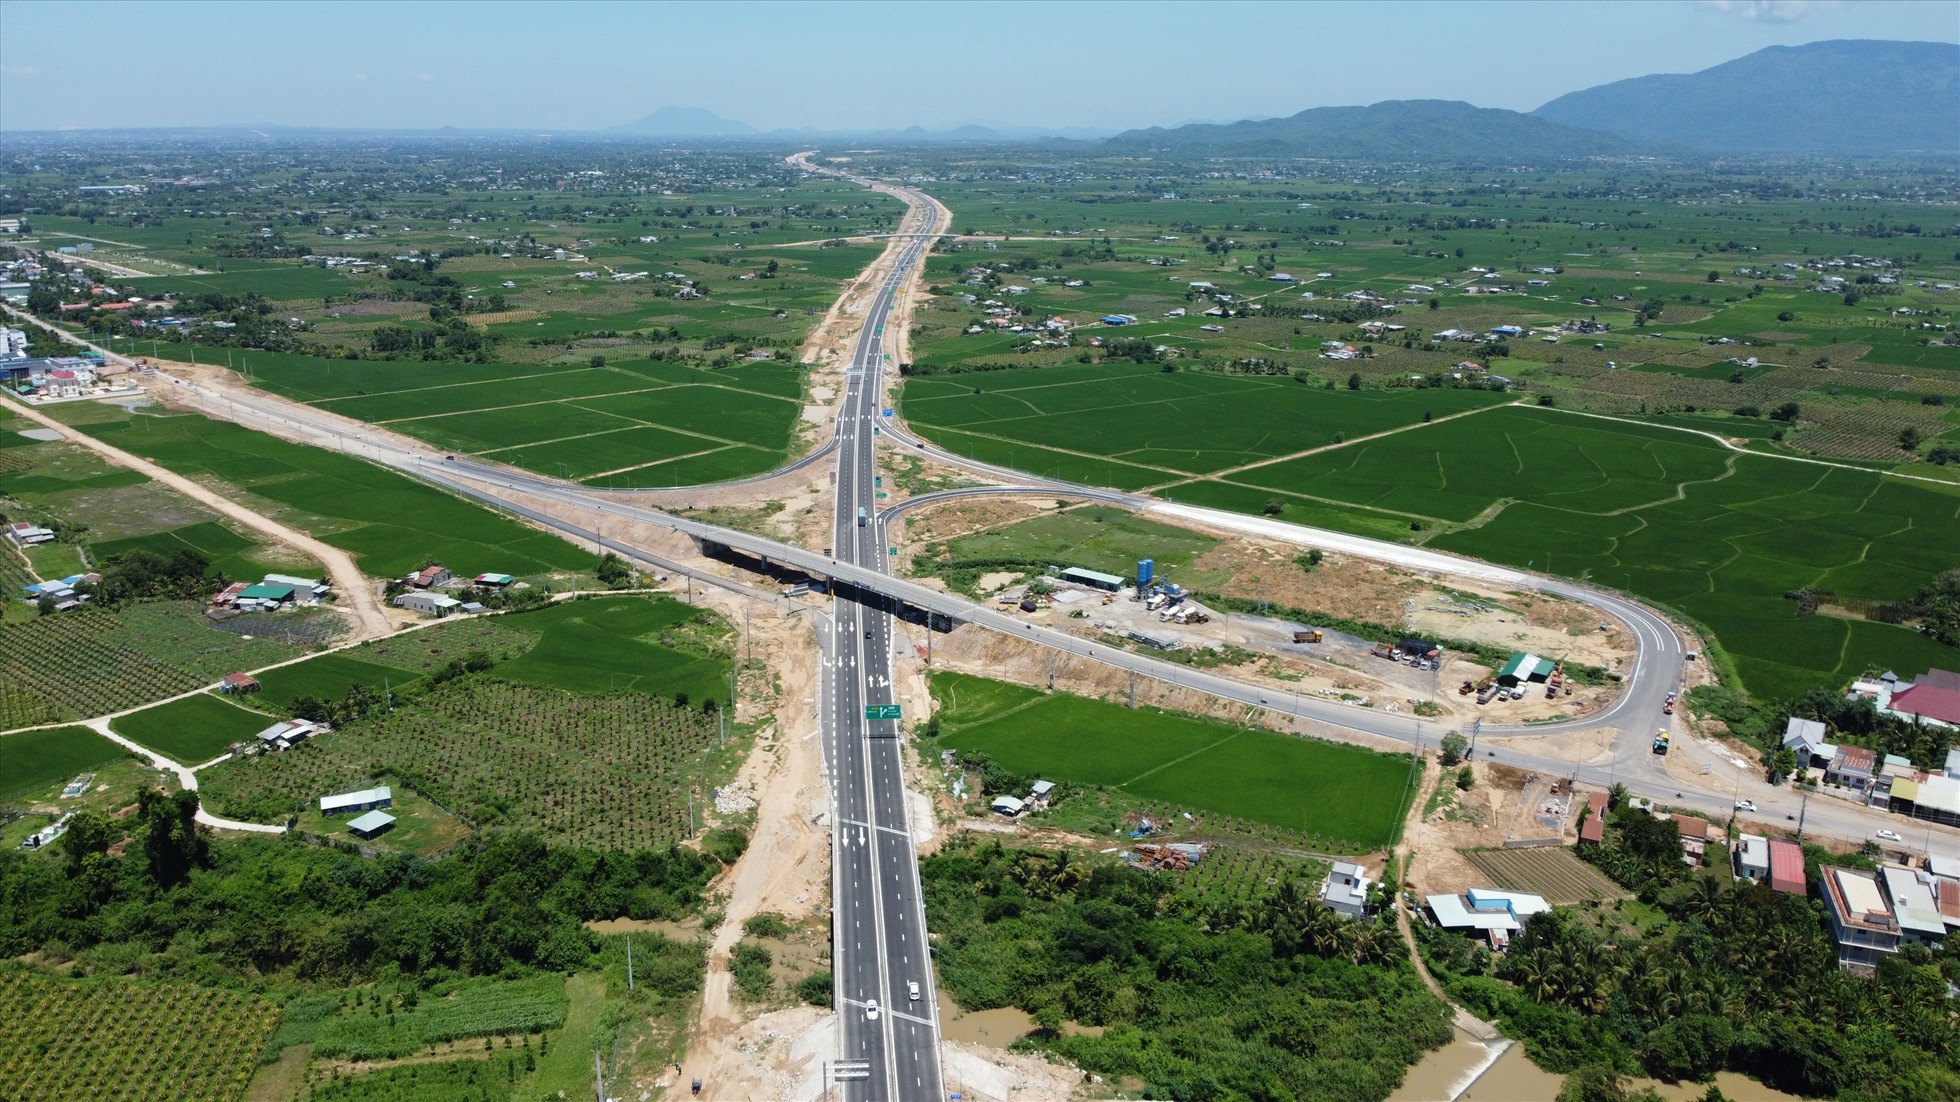 Tại nút giao Ma Lâm, đây là nút giao lớn từ cao tốc Vĩnh Hảo – Phan Thiết ra Quốc lộ 28 để đi Phan Thiết và Lâm Đồng. Toàn tuyến cao tốc Vĩnh Hảo – Phan Thiết có 5 nút giao liên thông.